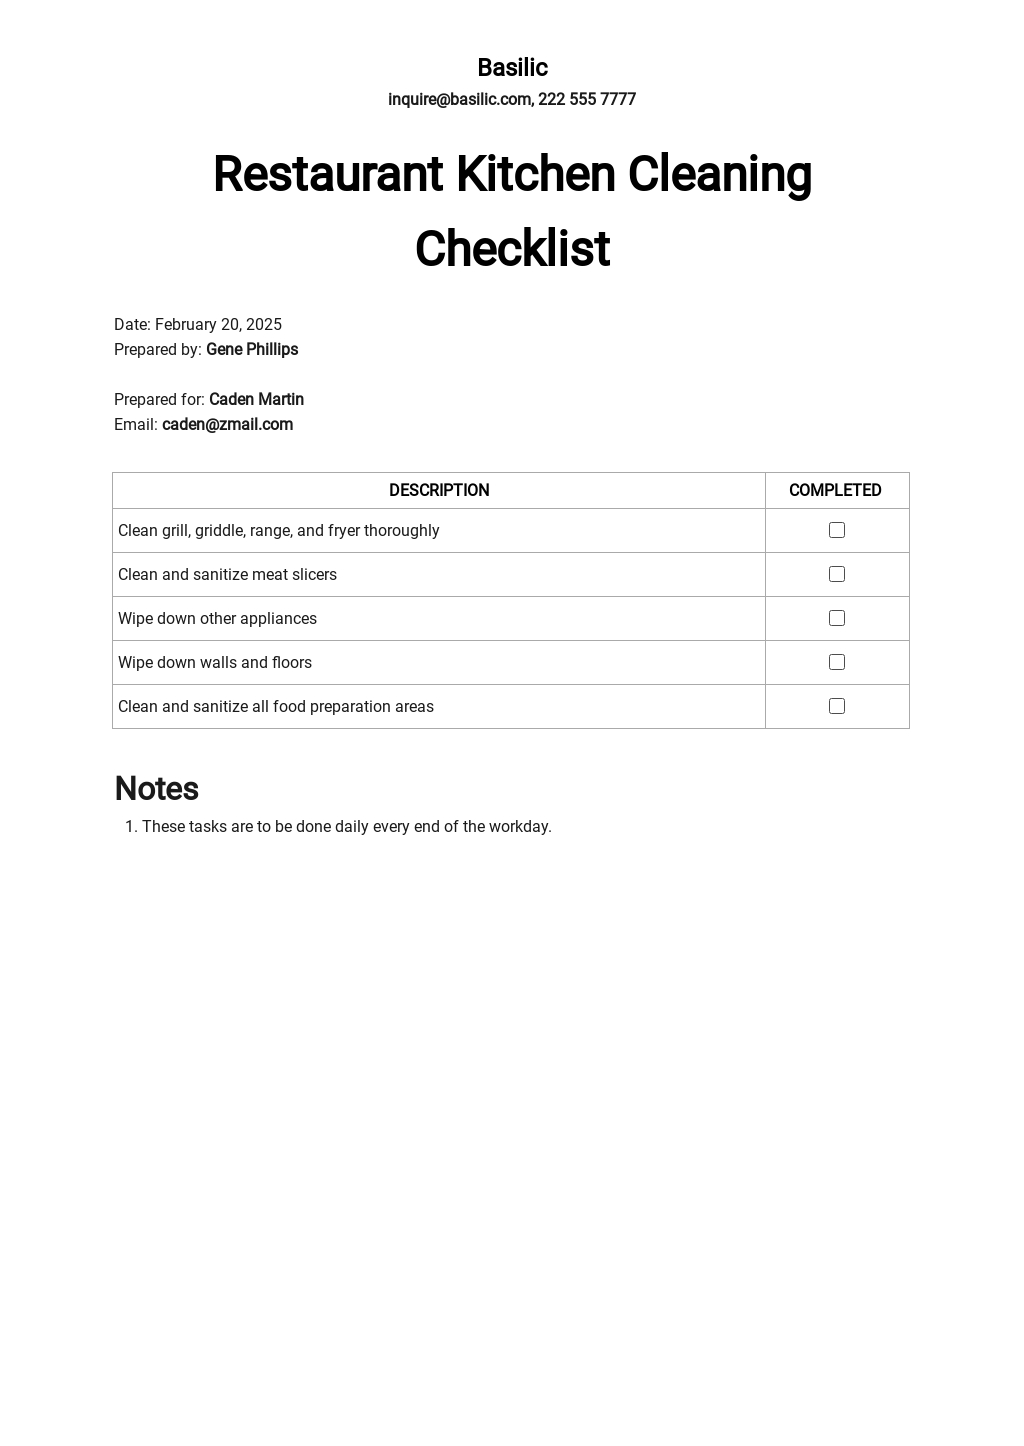 Restaurant Kitchen Cleaning Checklist Template.jpe